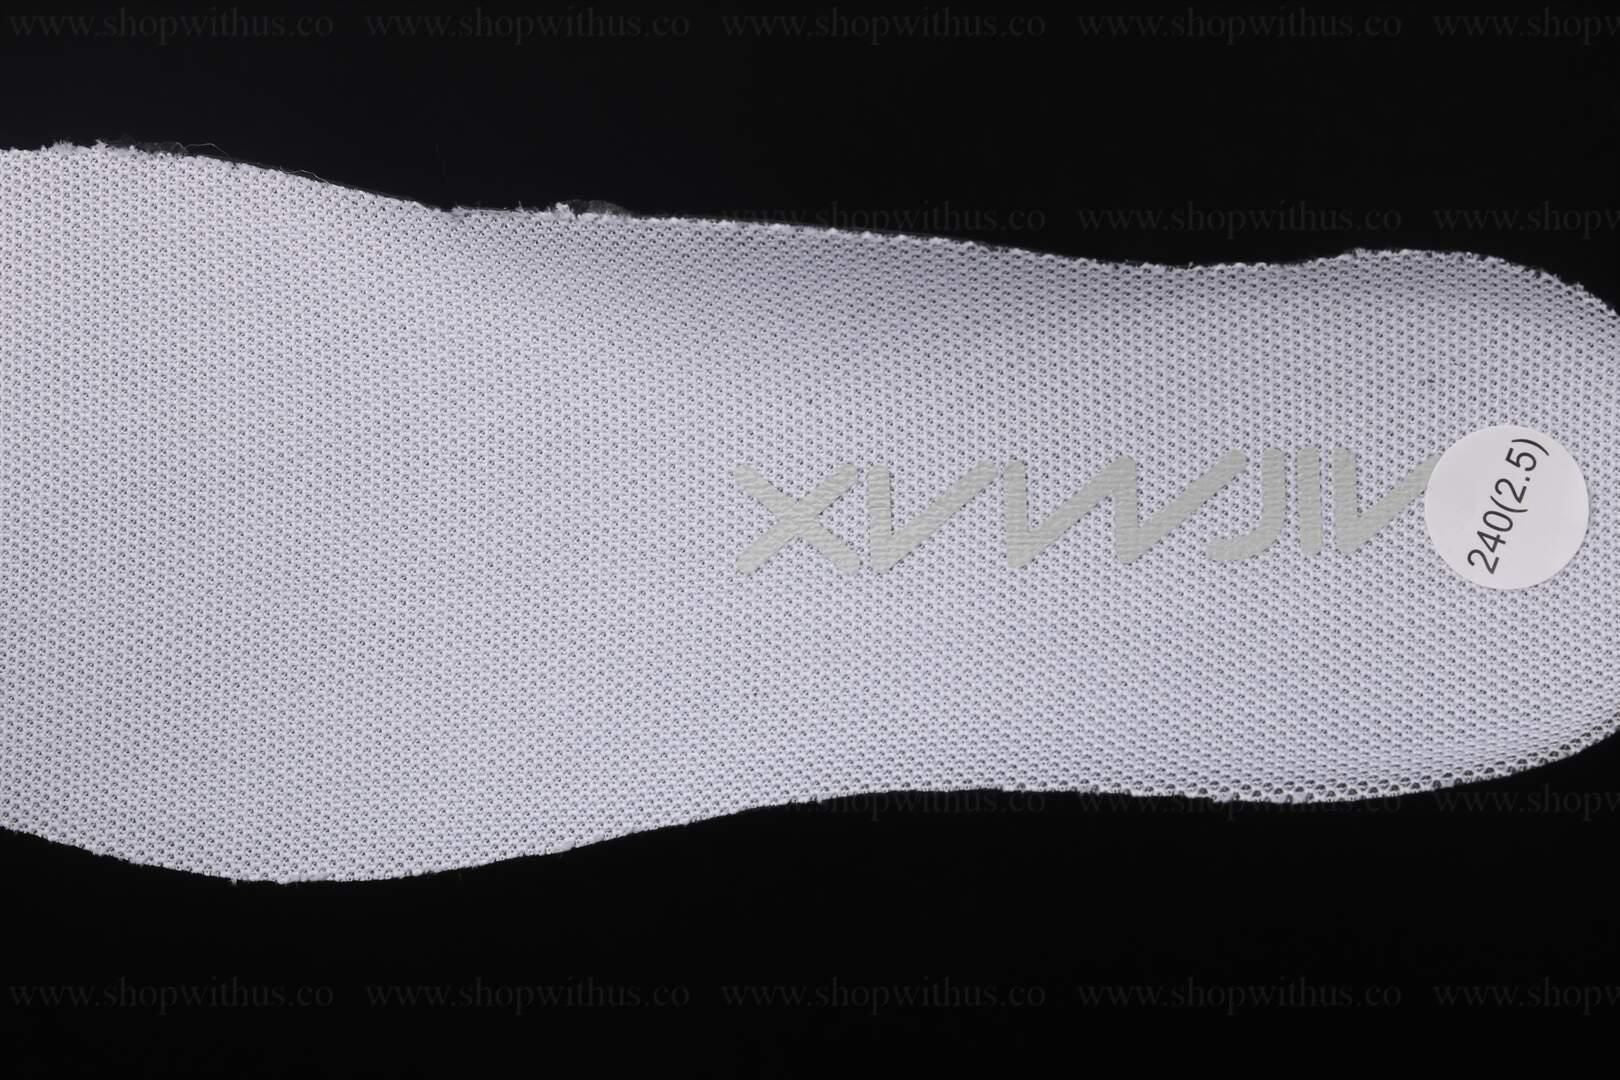 NikeAir Max 270 React - White